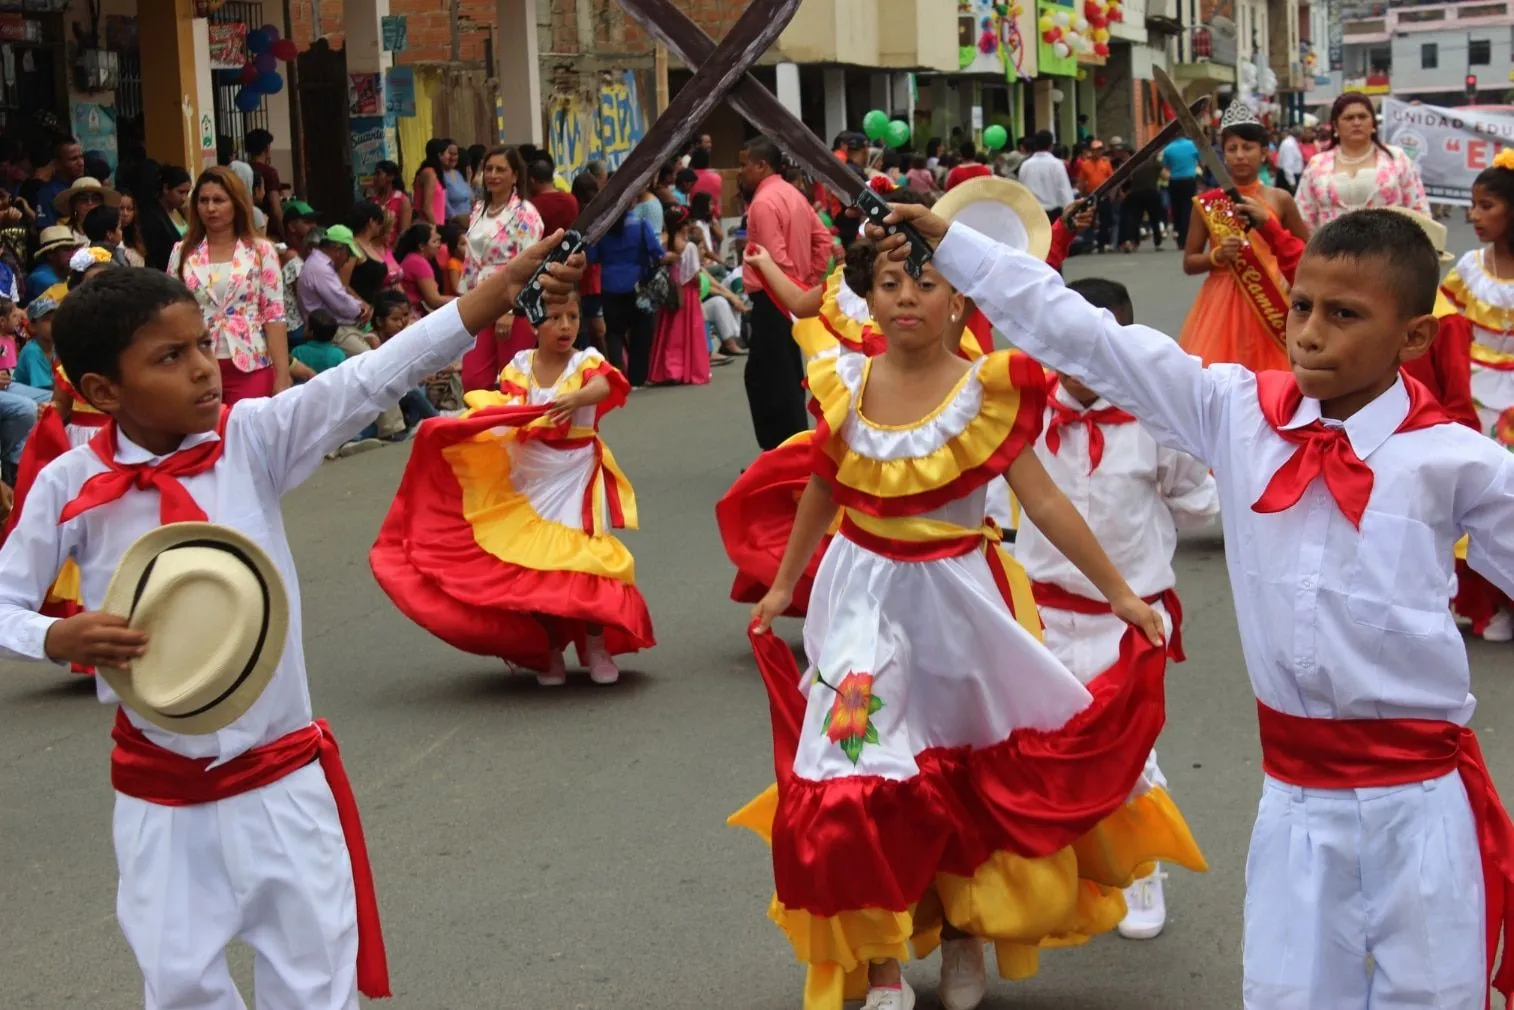 Danzas Tradicionales del Ecuador - Mind Map